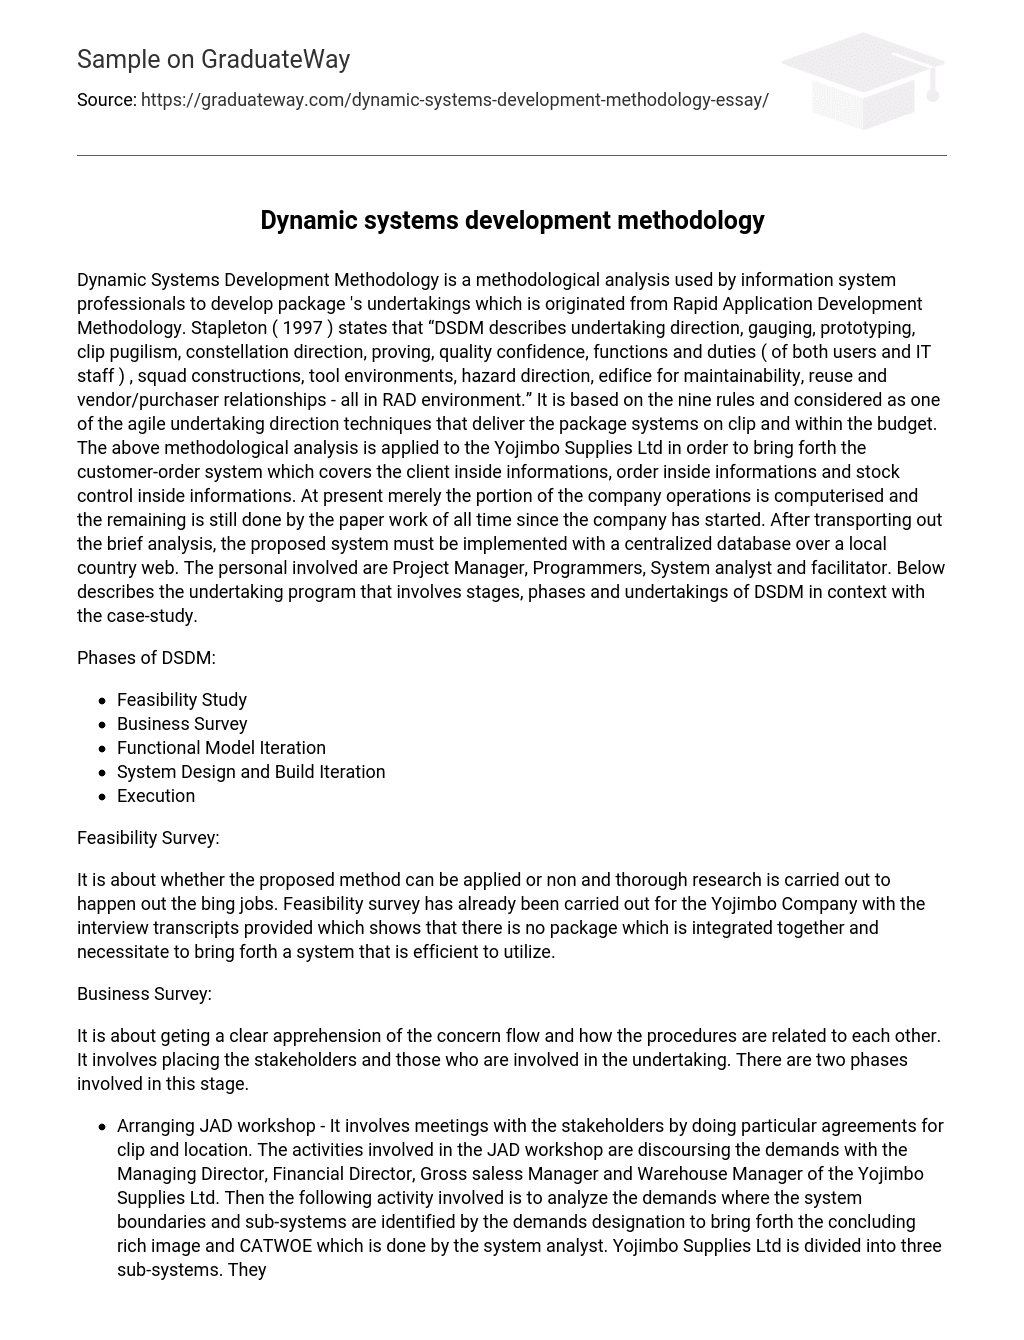 Dynamic systems development methodology